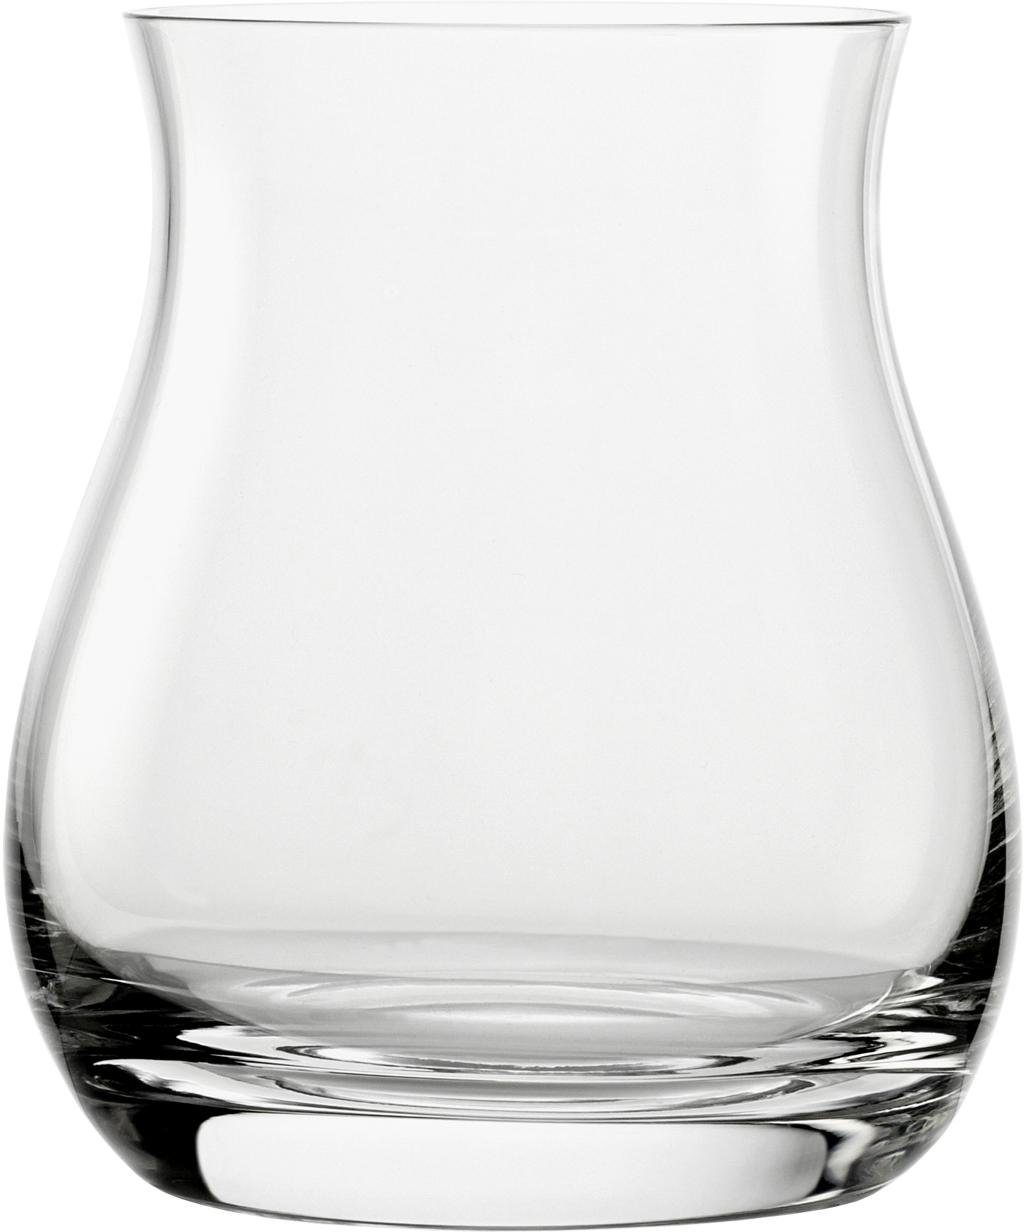 Stölzle Whiskyglas Canadian Whisky, Kristallglas, 6-teilig